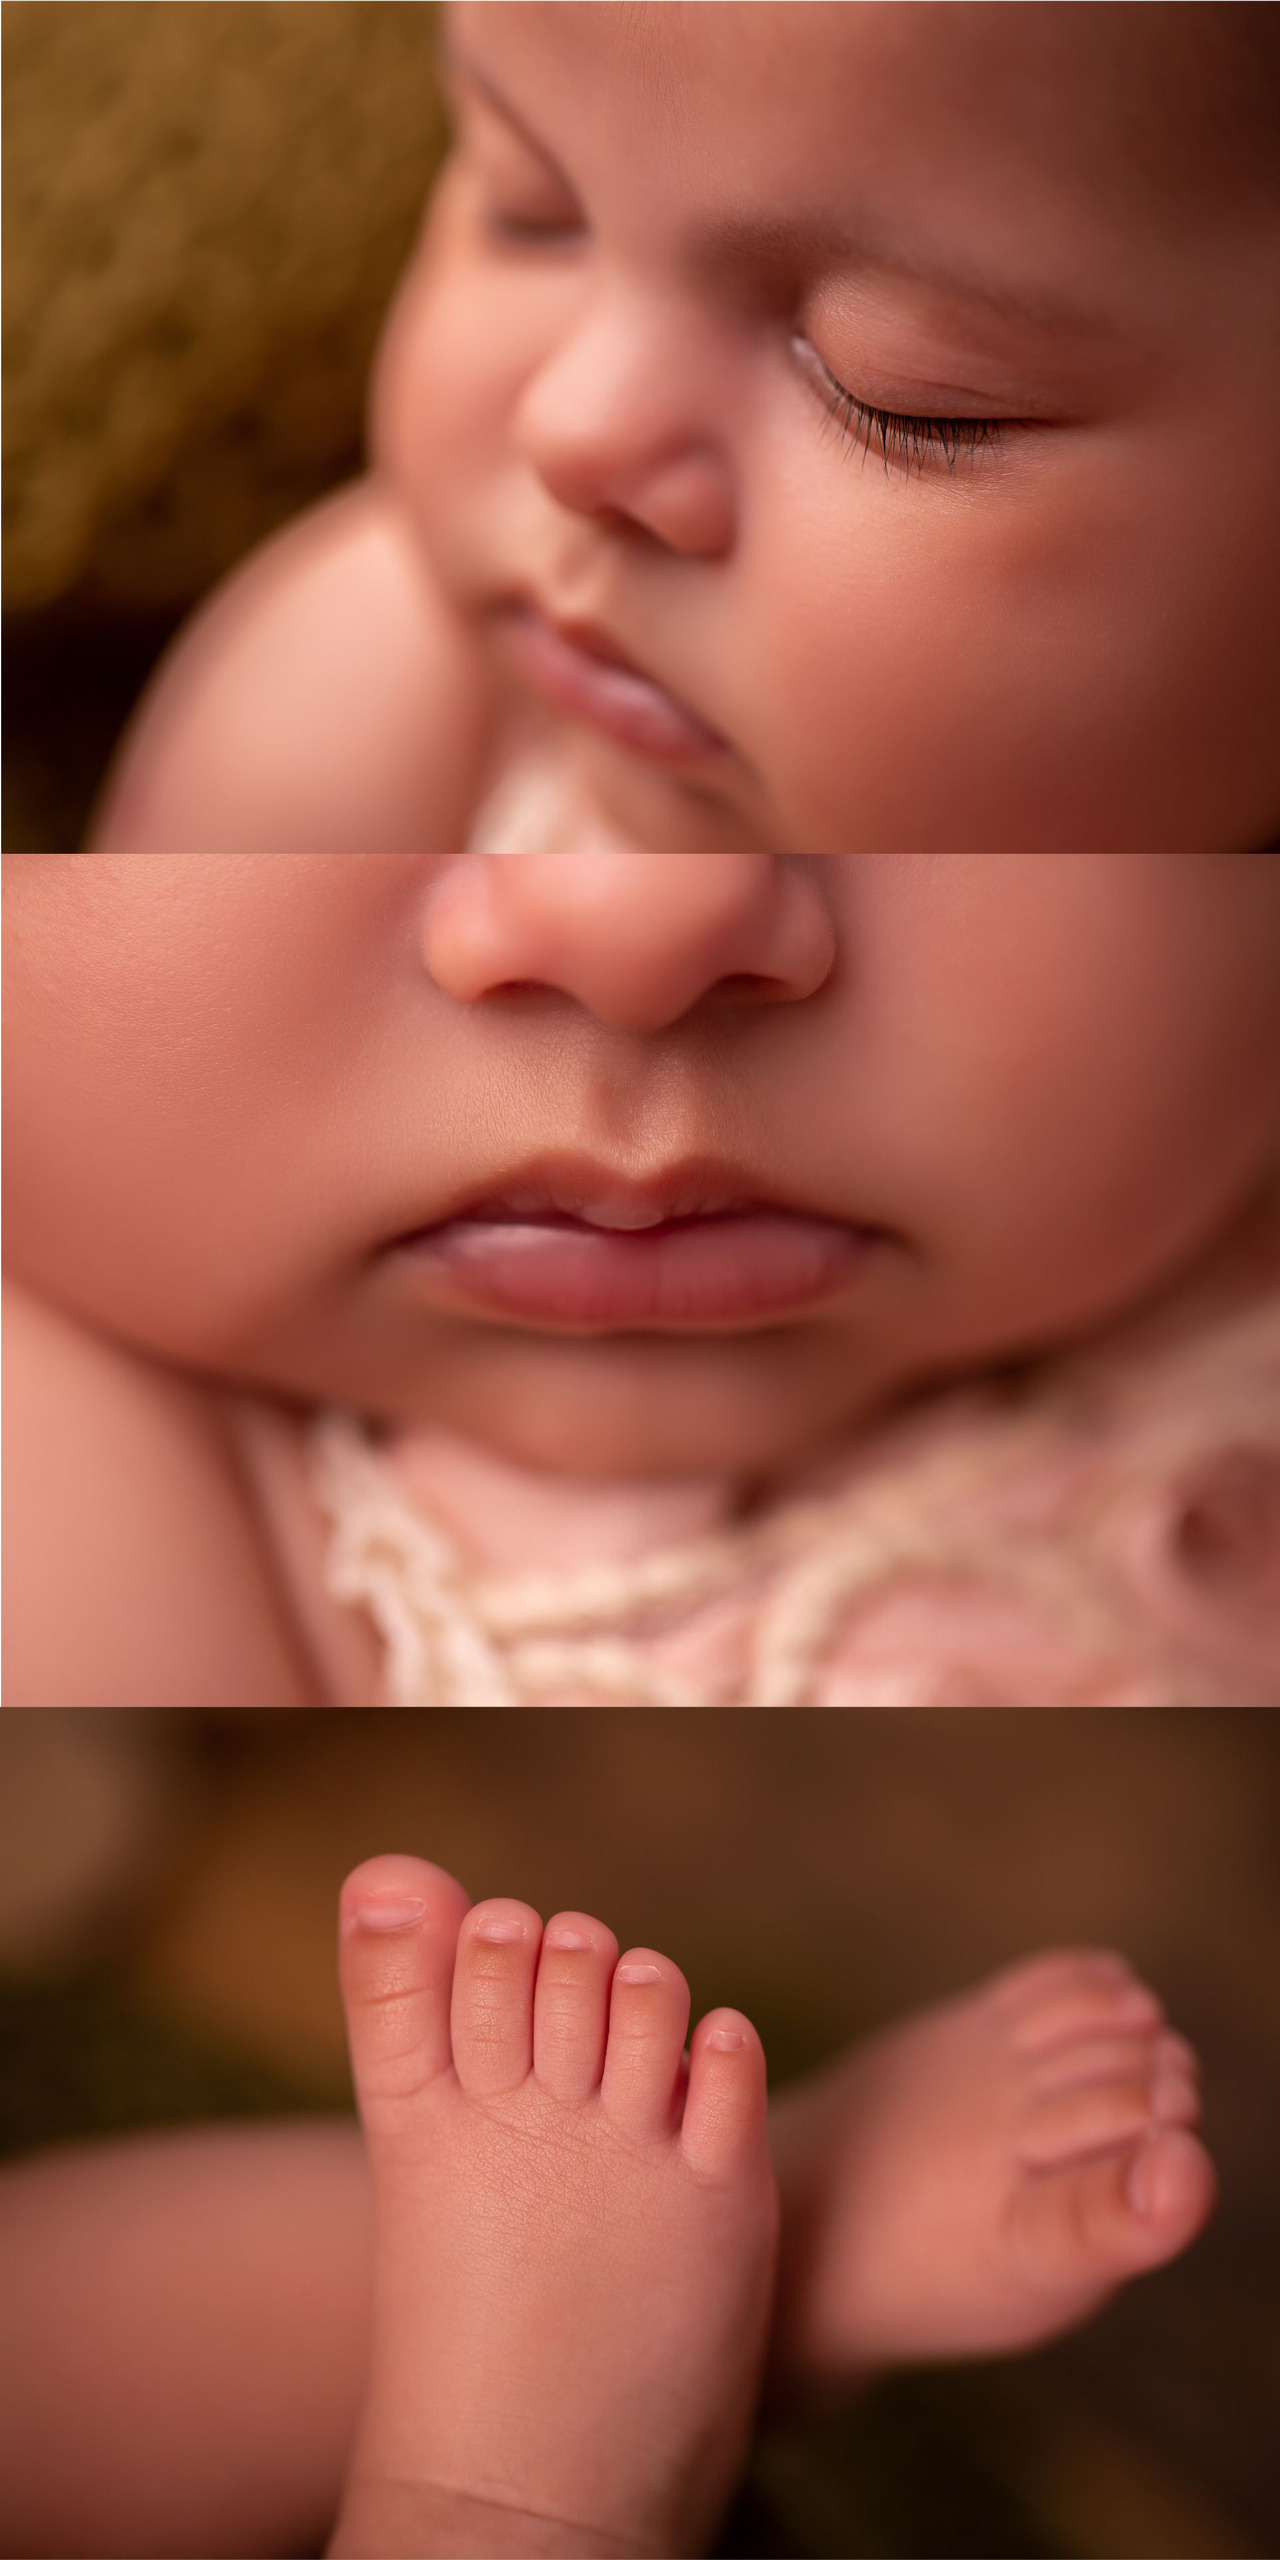 ensaio bebe detalhes corpinho fotografados rostinho rosto boca pé dedo 